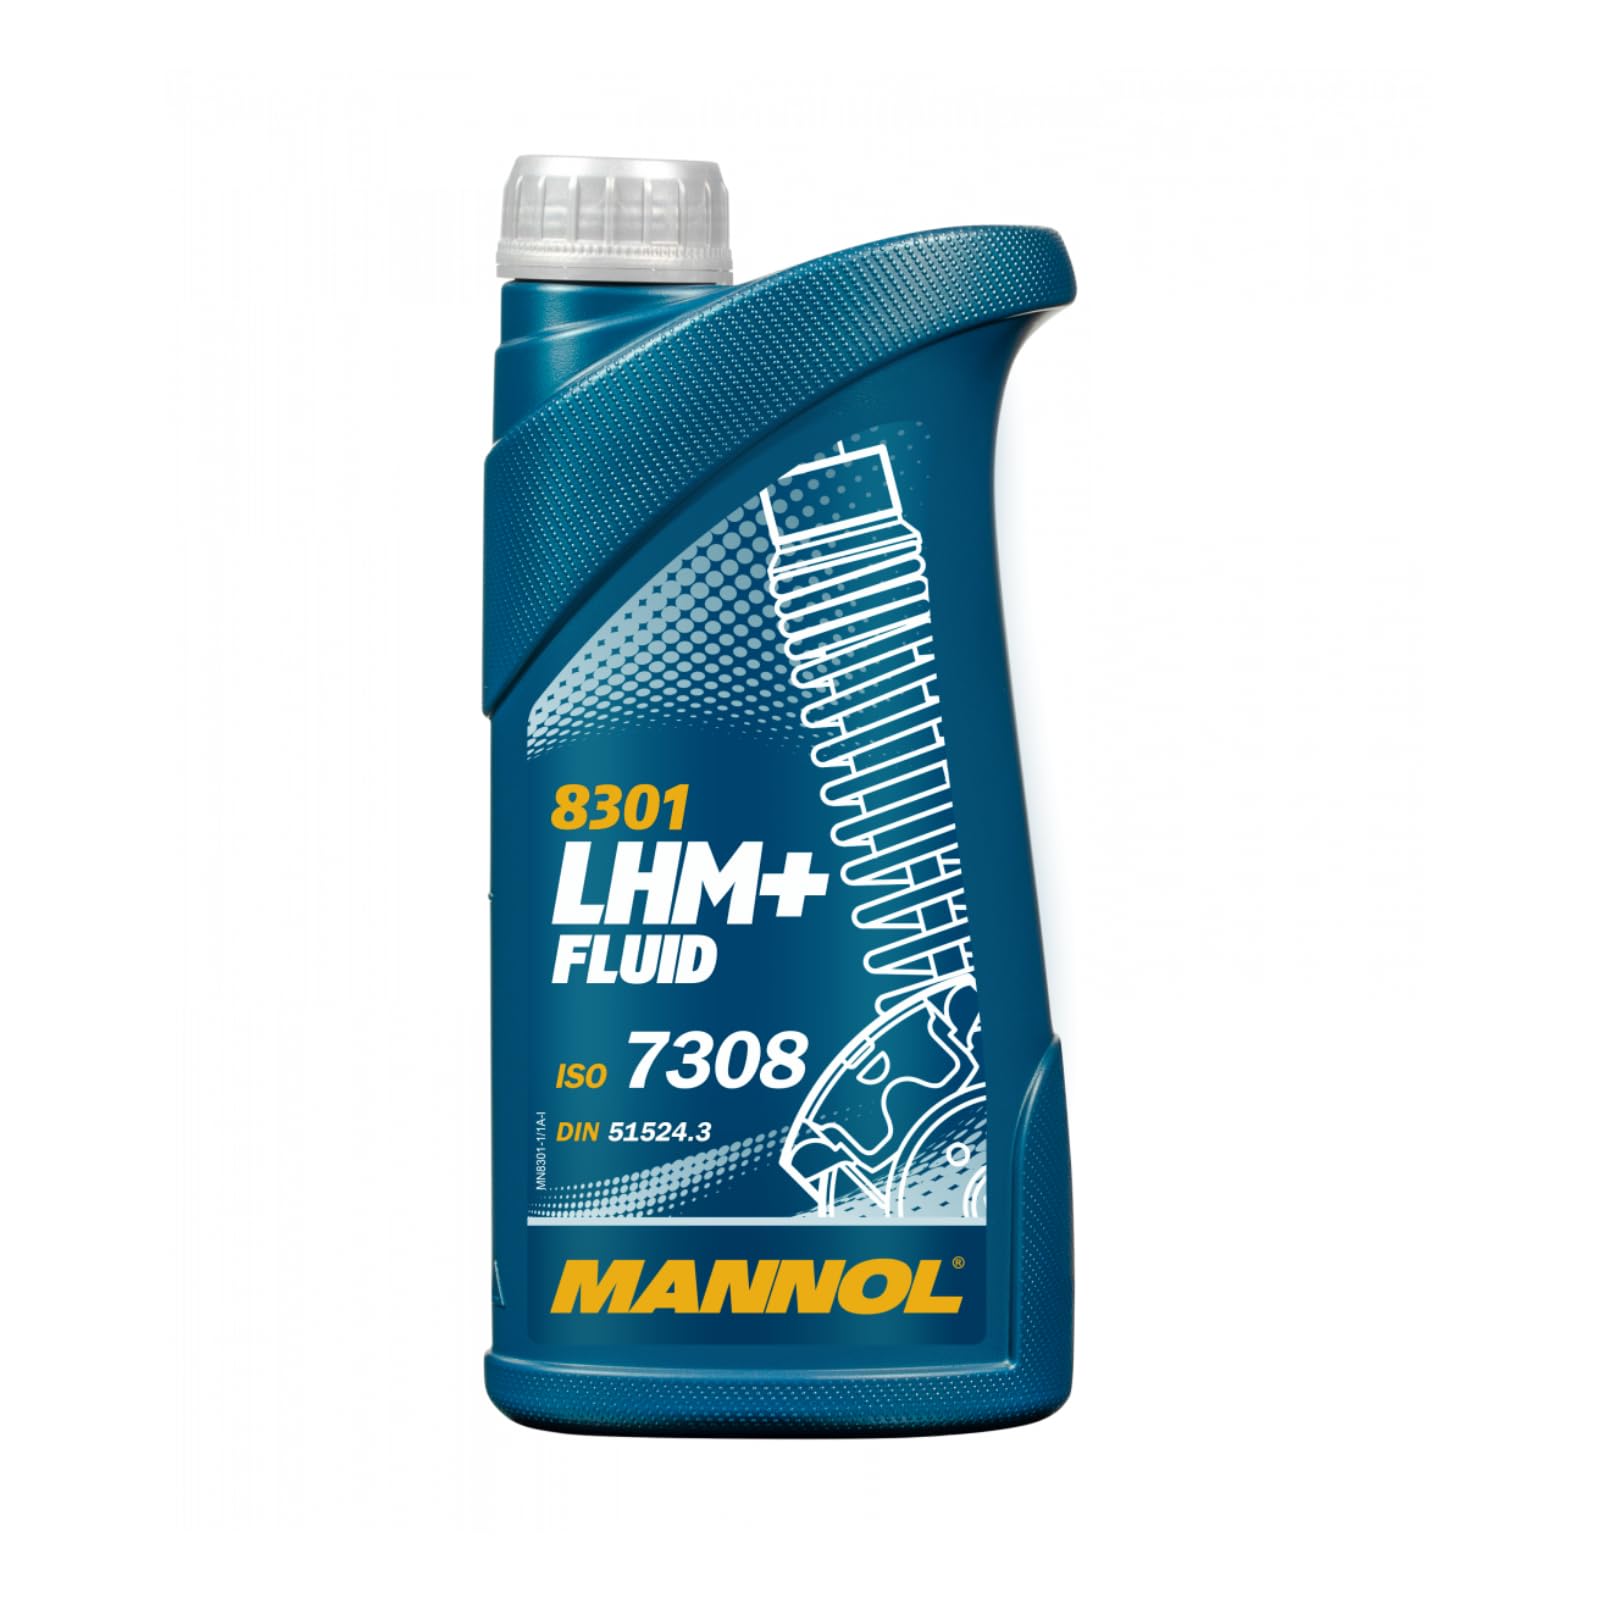 1L Mannol LHM+ Plus Fluid Hydrauliköl von MANNOL